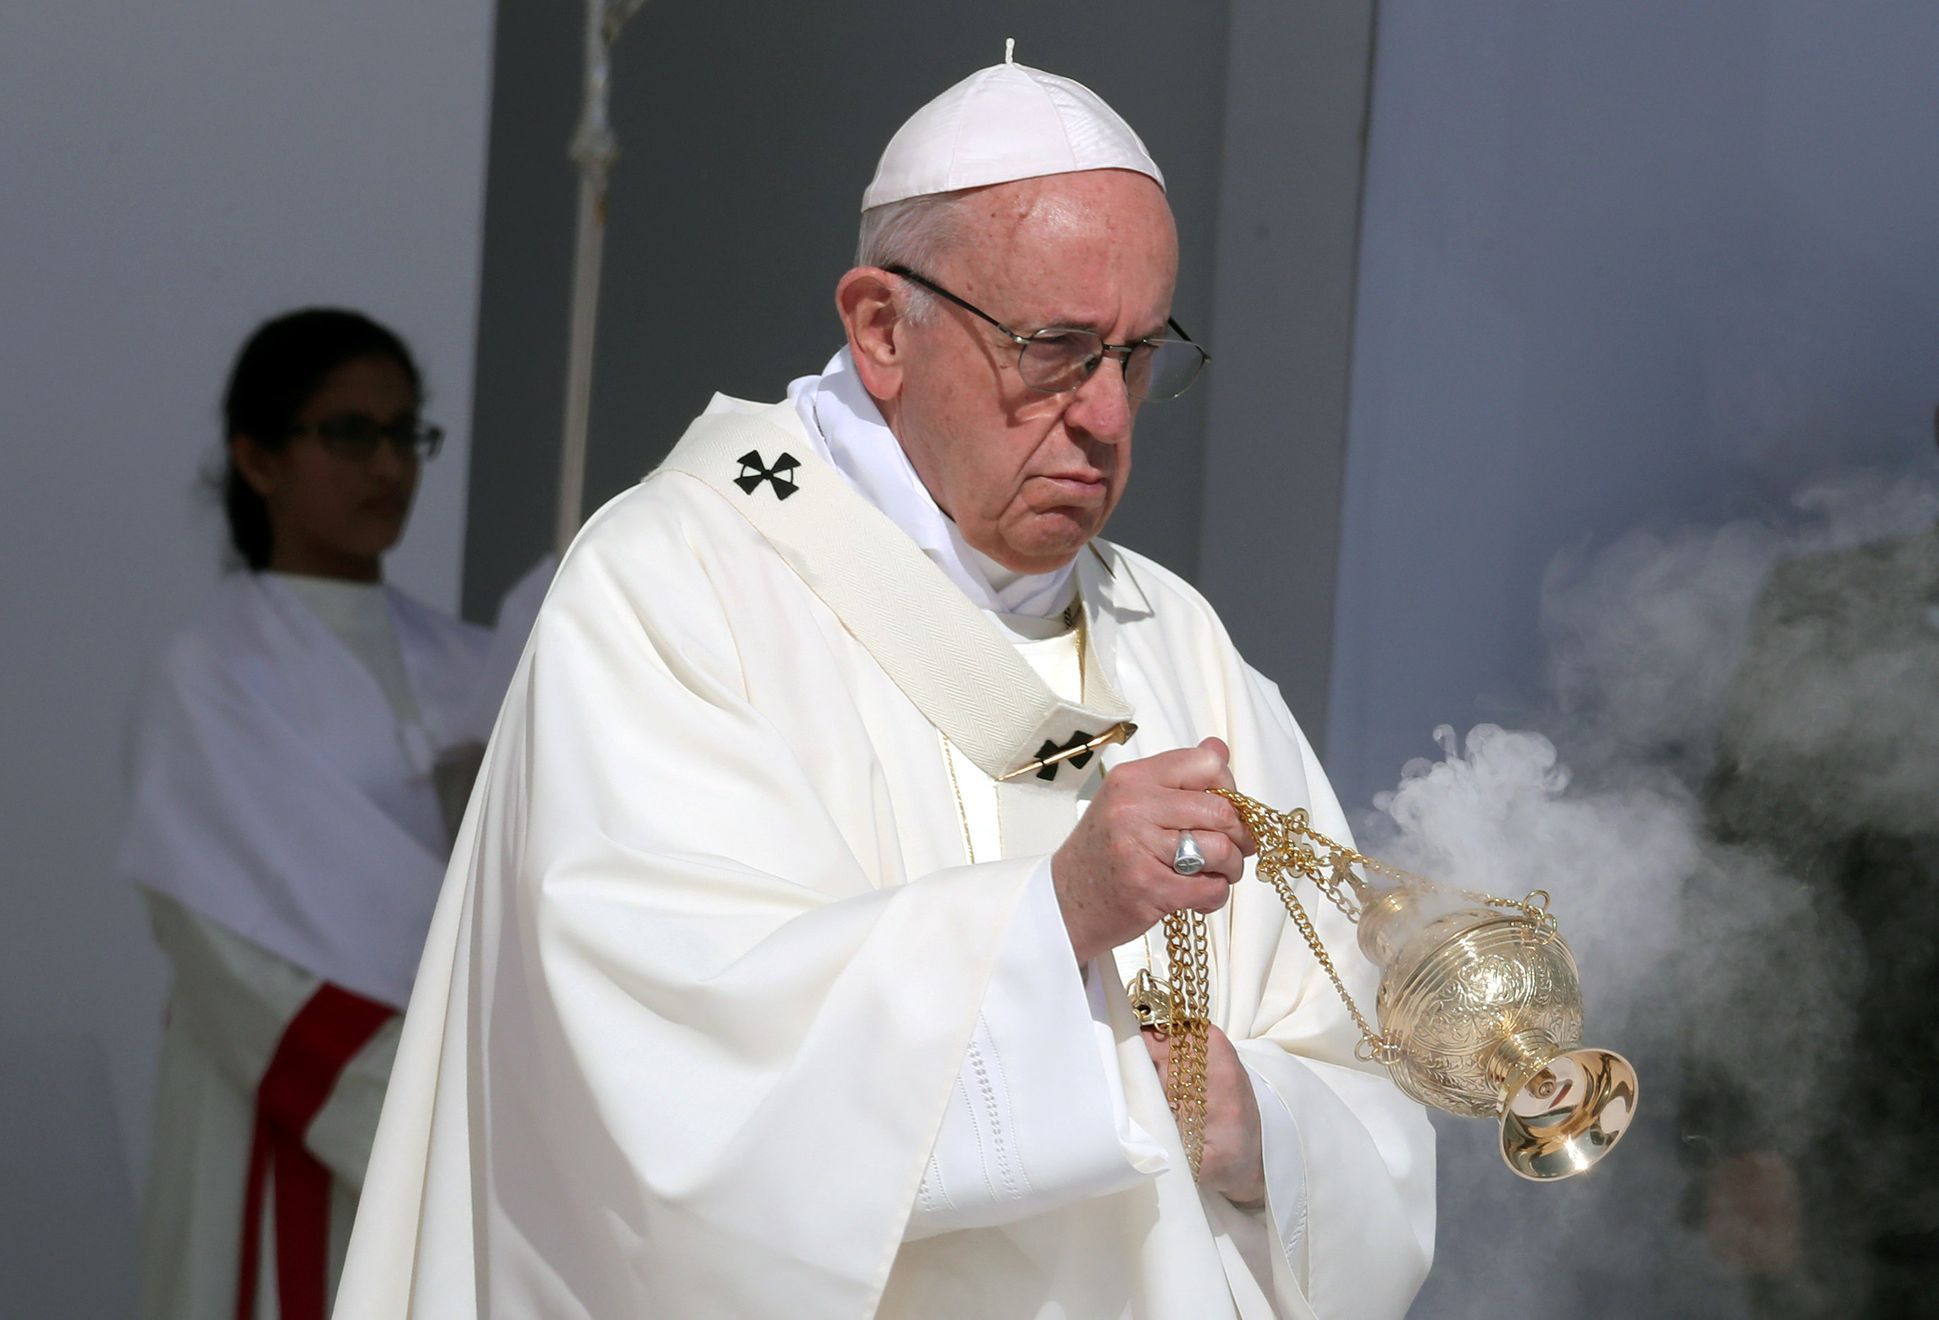 Papež František odsloužil mši v Abú Zabí.